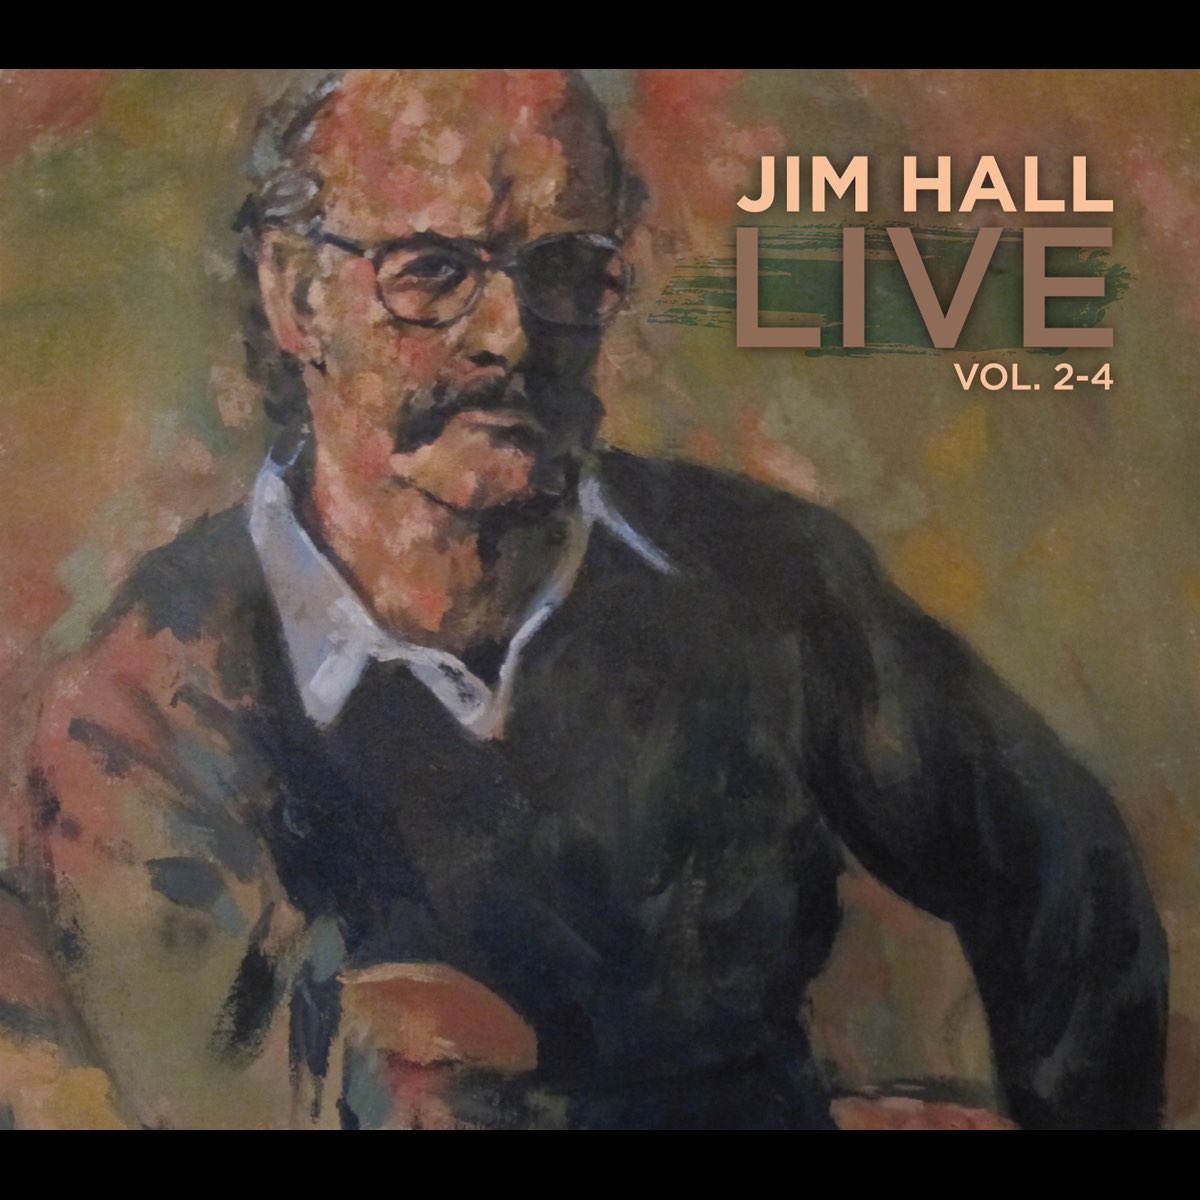 Hall live 2. Jim Hall. Жив Jim. Jim Live.